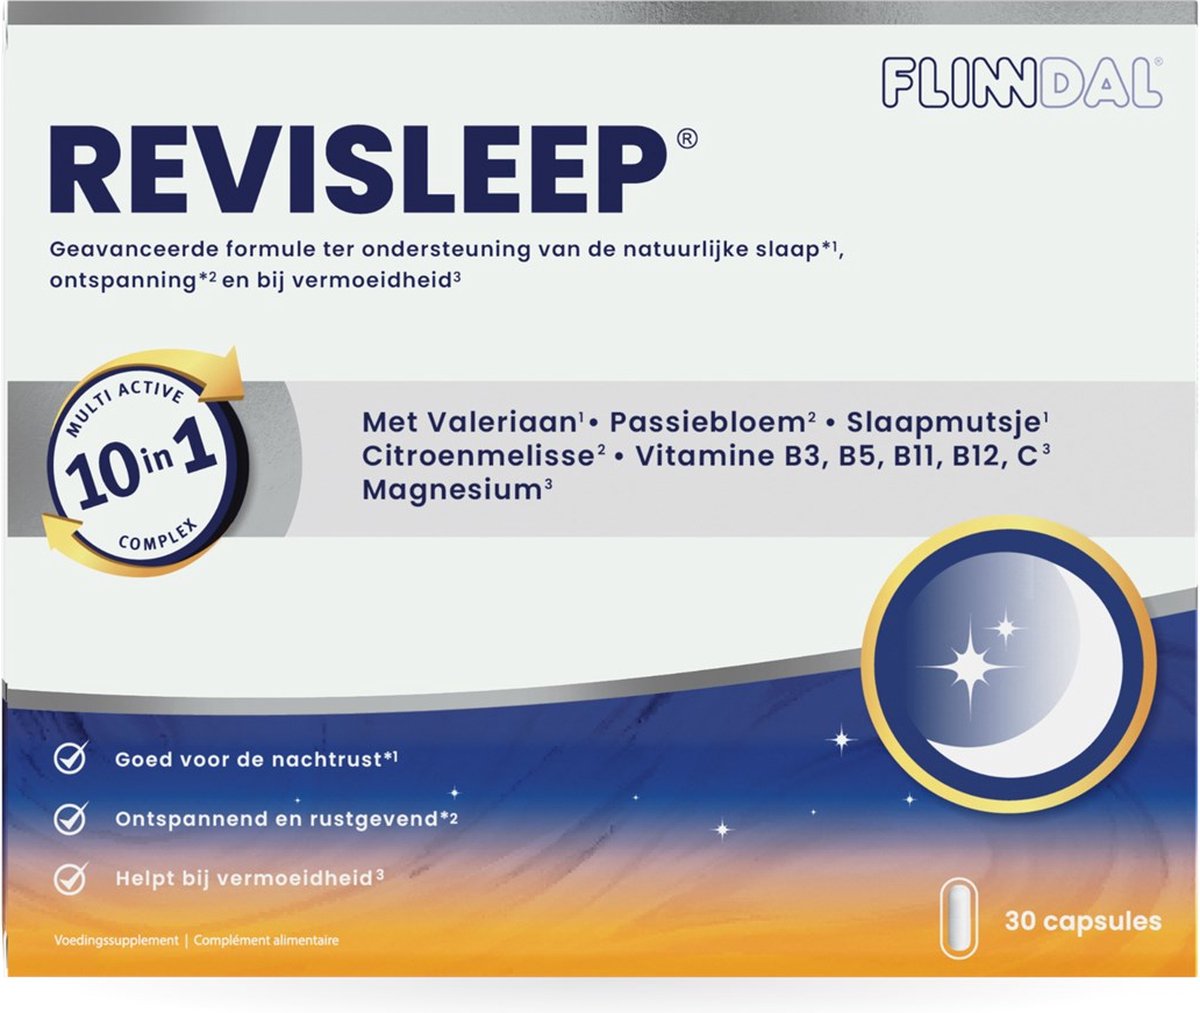 Revisleep 30 capsules - Voor een goede nachtrust, werkt ontspannend en rustgevend*.